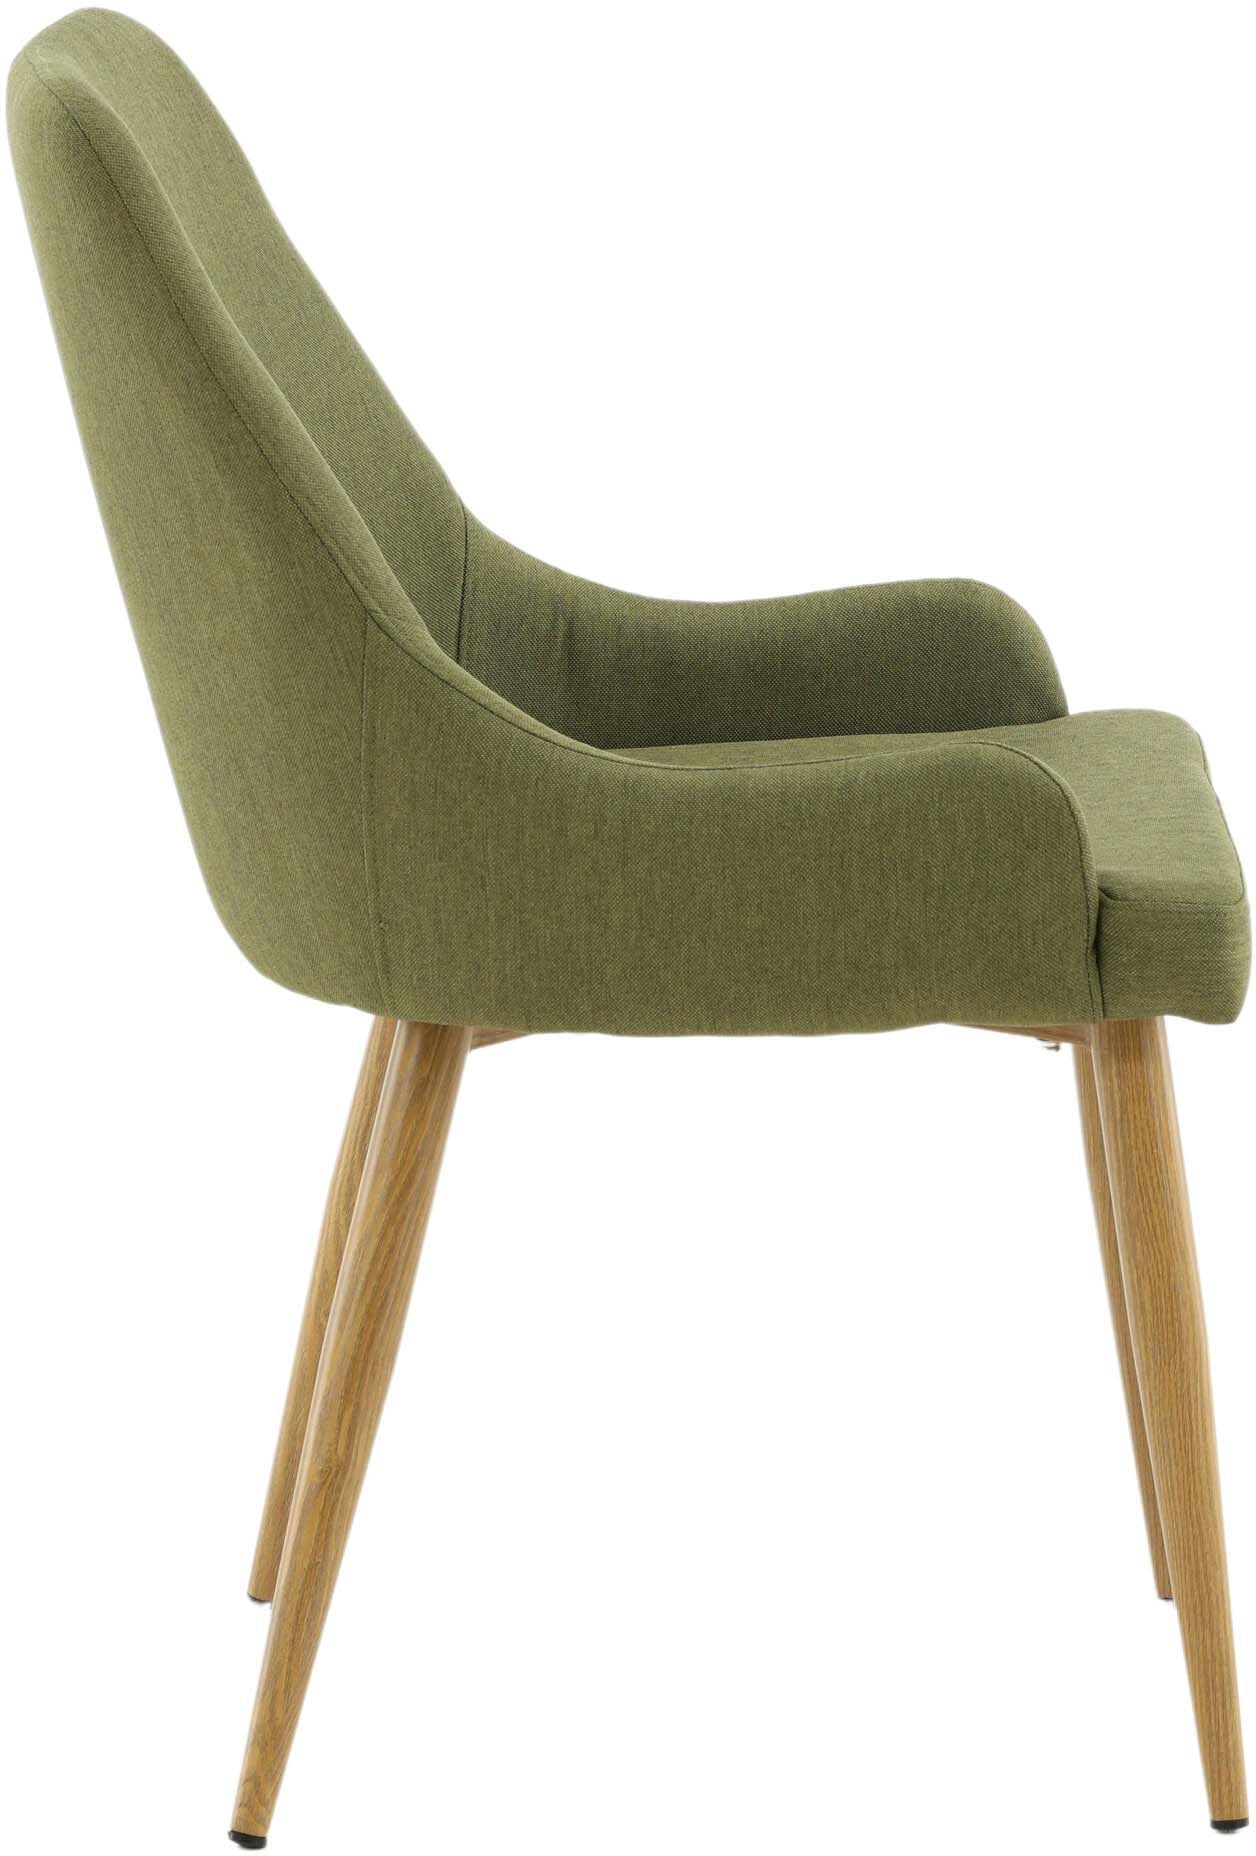 Plaza Stuhl in Moosgrün / Natur präsentiert im Onlineshop von KAQTU Design AG. Stuhl ist von Venture Home